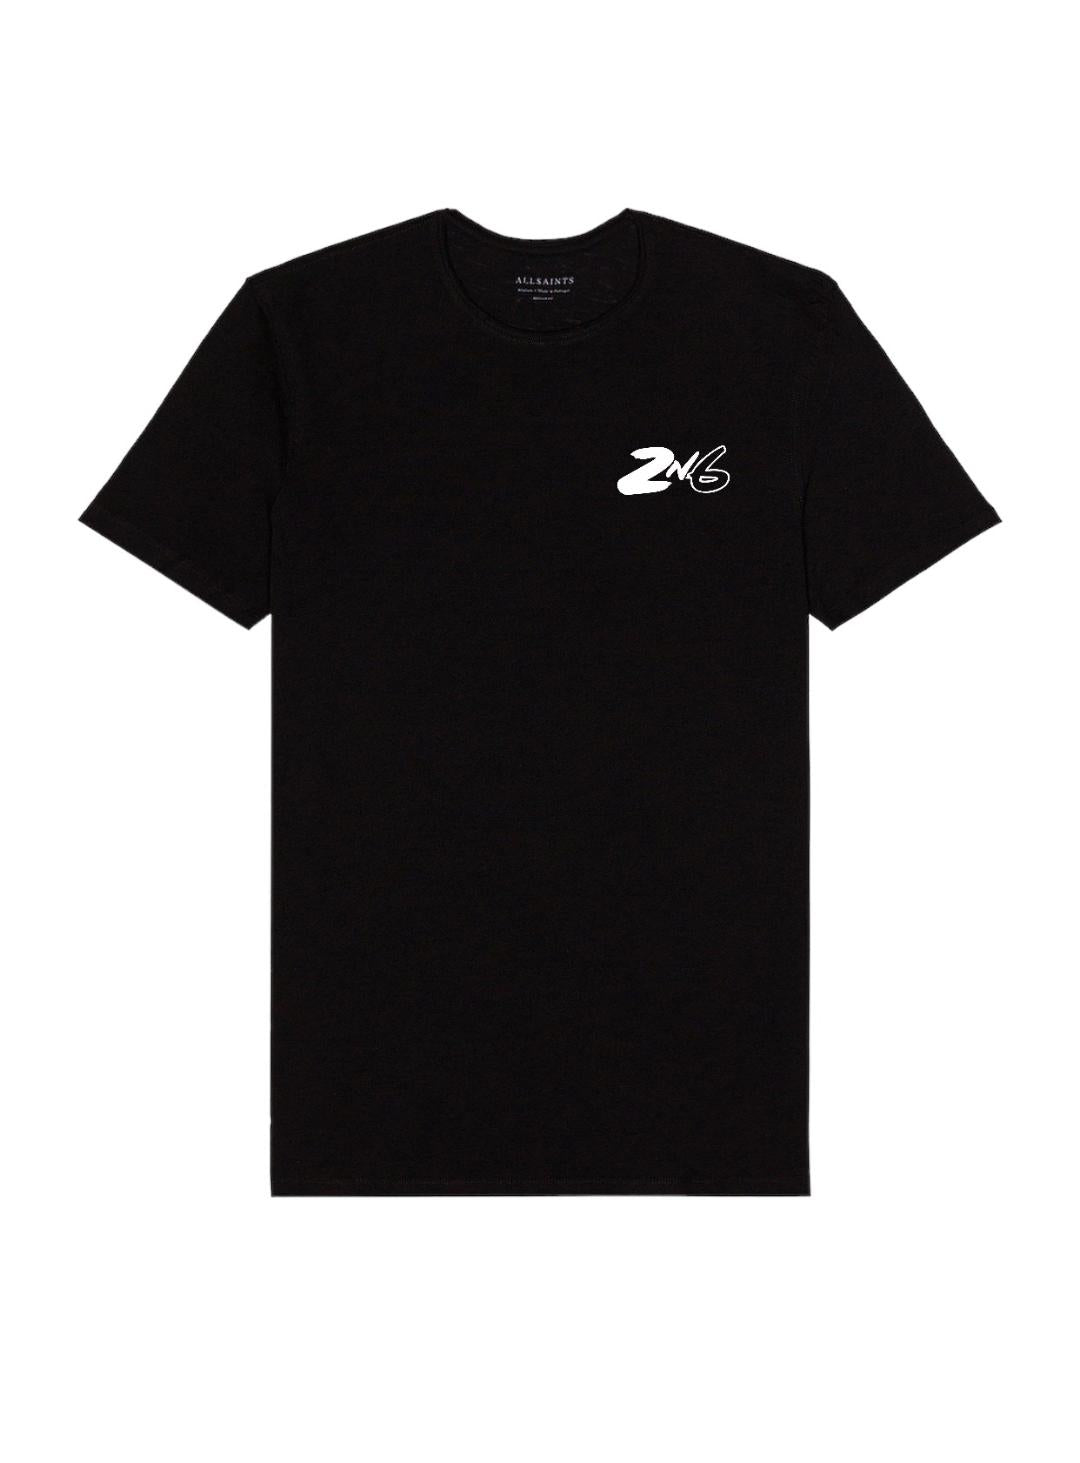 2n6 Sports T-Shirt